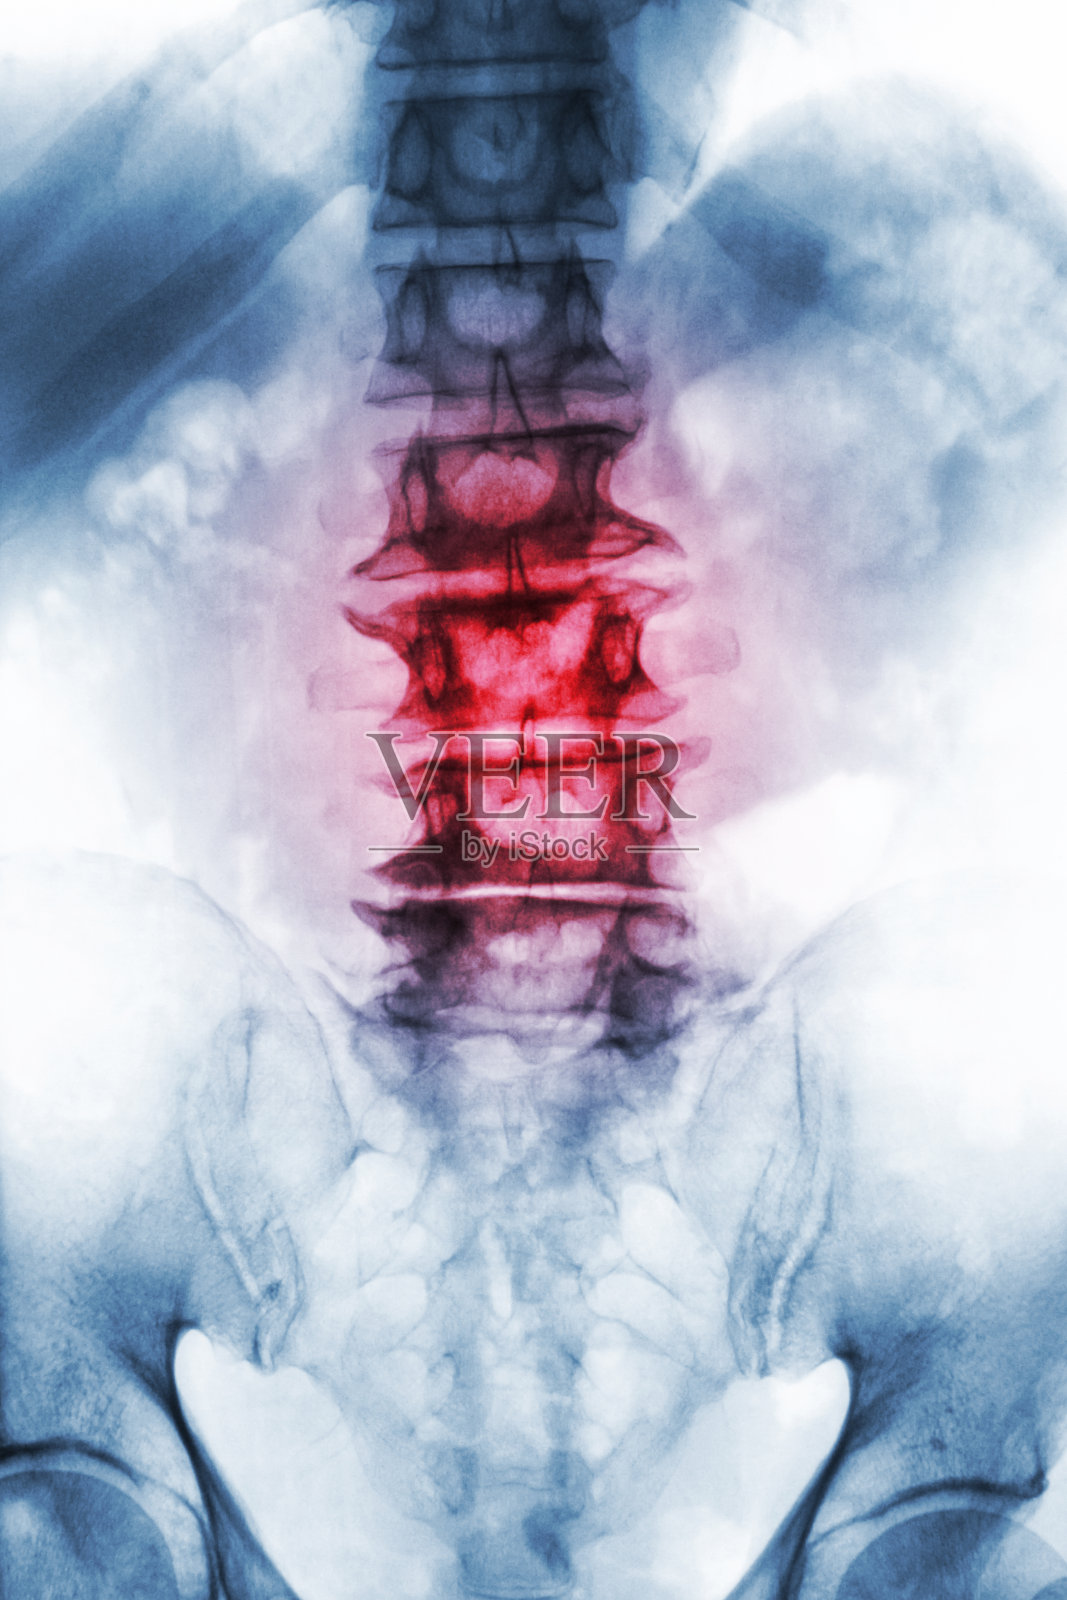 脊椎病。老年患者腰骶椎x线片显示骨赘、退行性椎体塌陷。前视图照片摄影图片